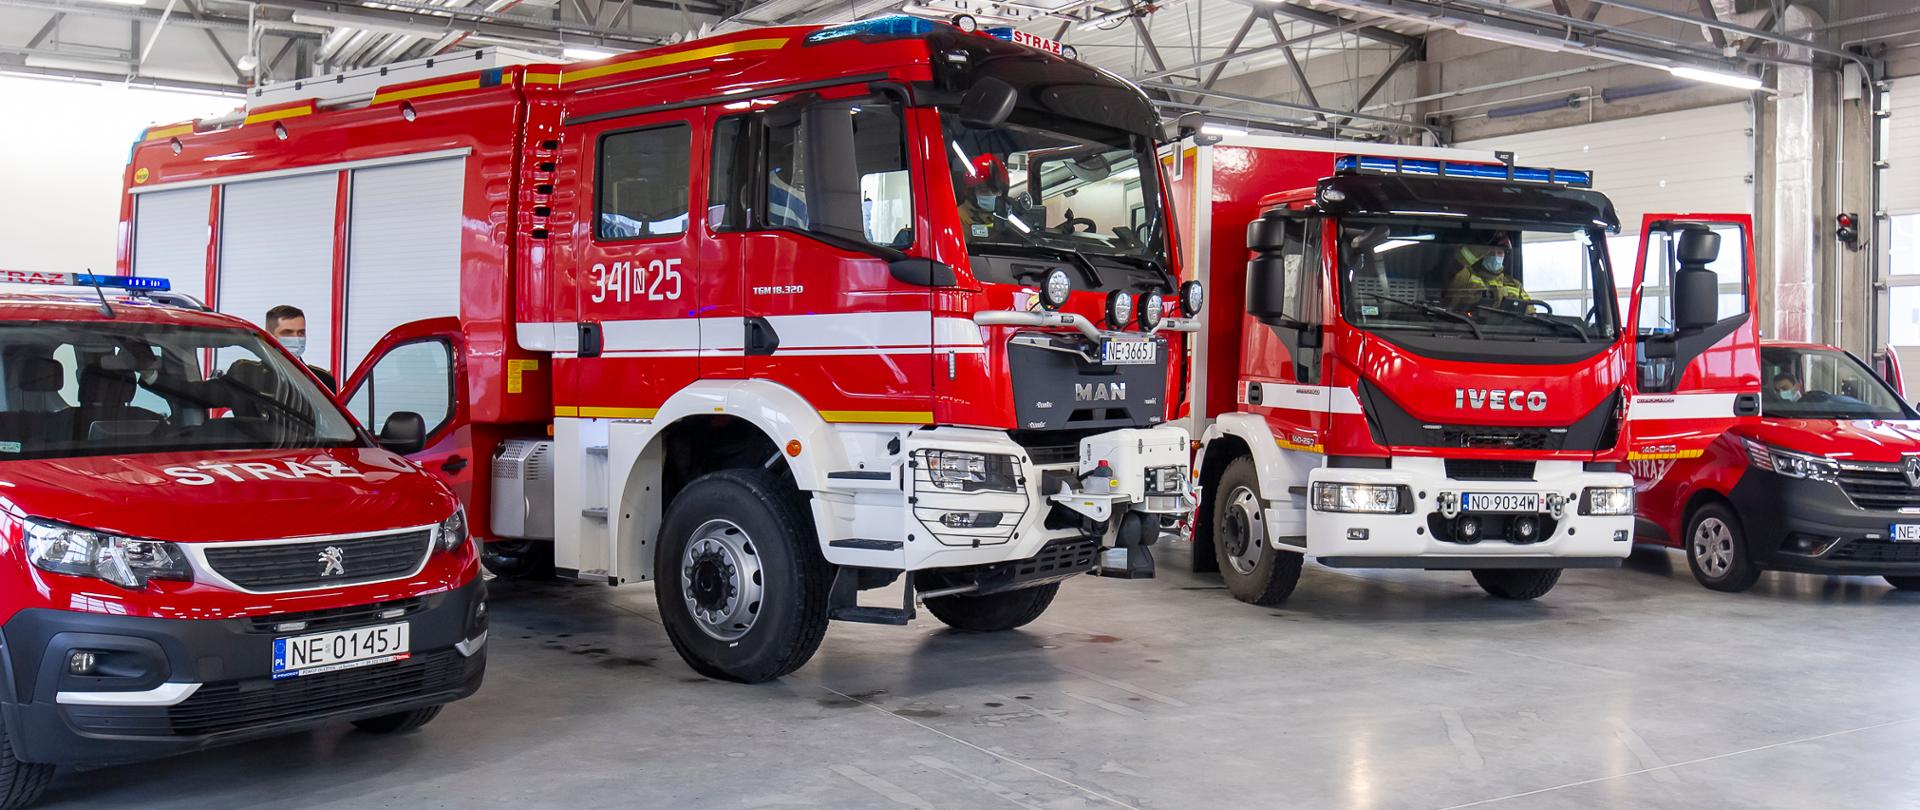 Cztery pojazdy pożarnicze widziane od przodu, zaparkowane w garażu strażackiej remizy.